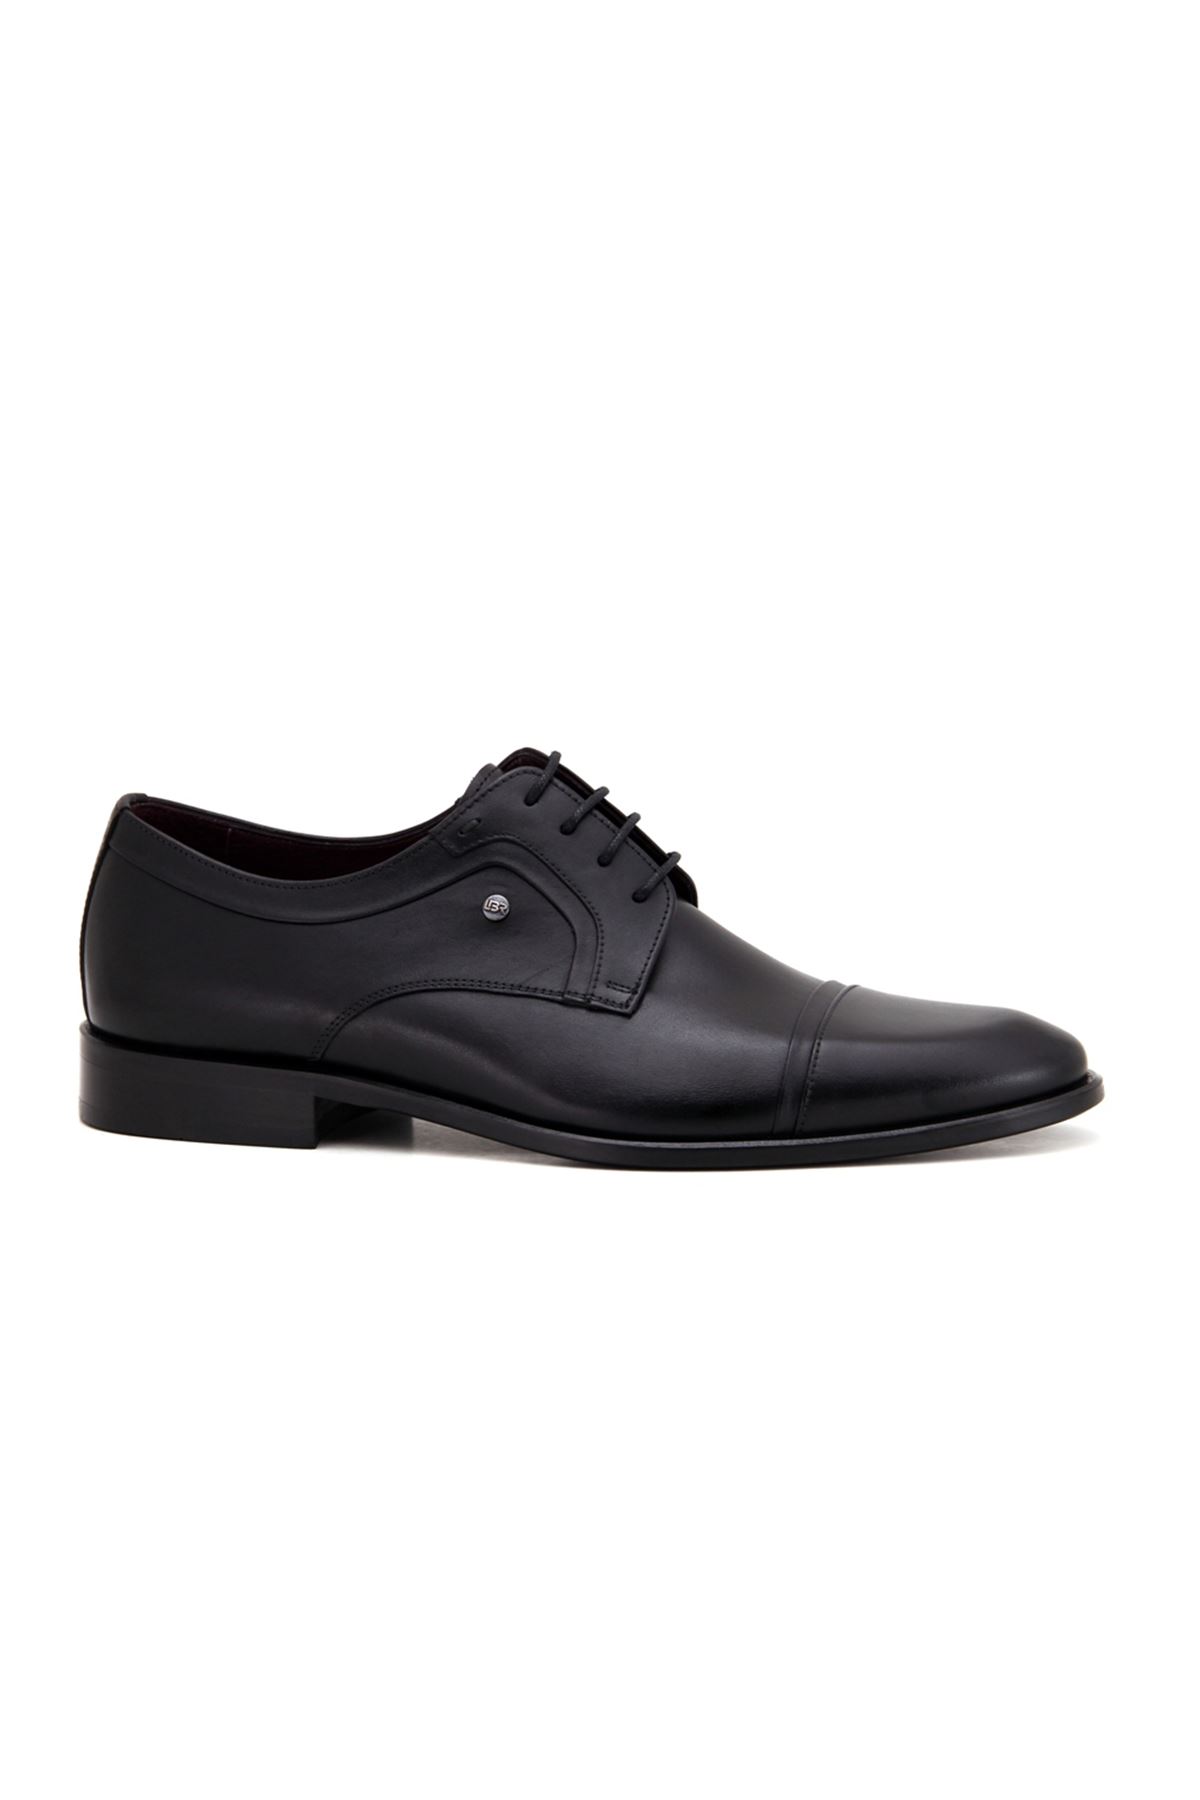 3124 Libero Klasik Erkek Ayakkabı - Siyah